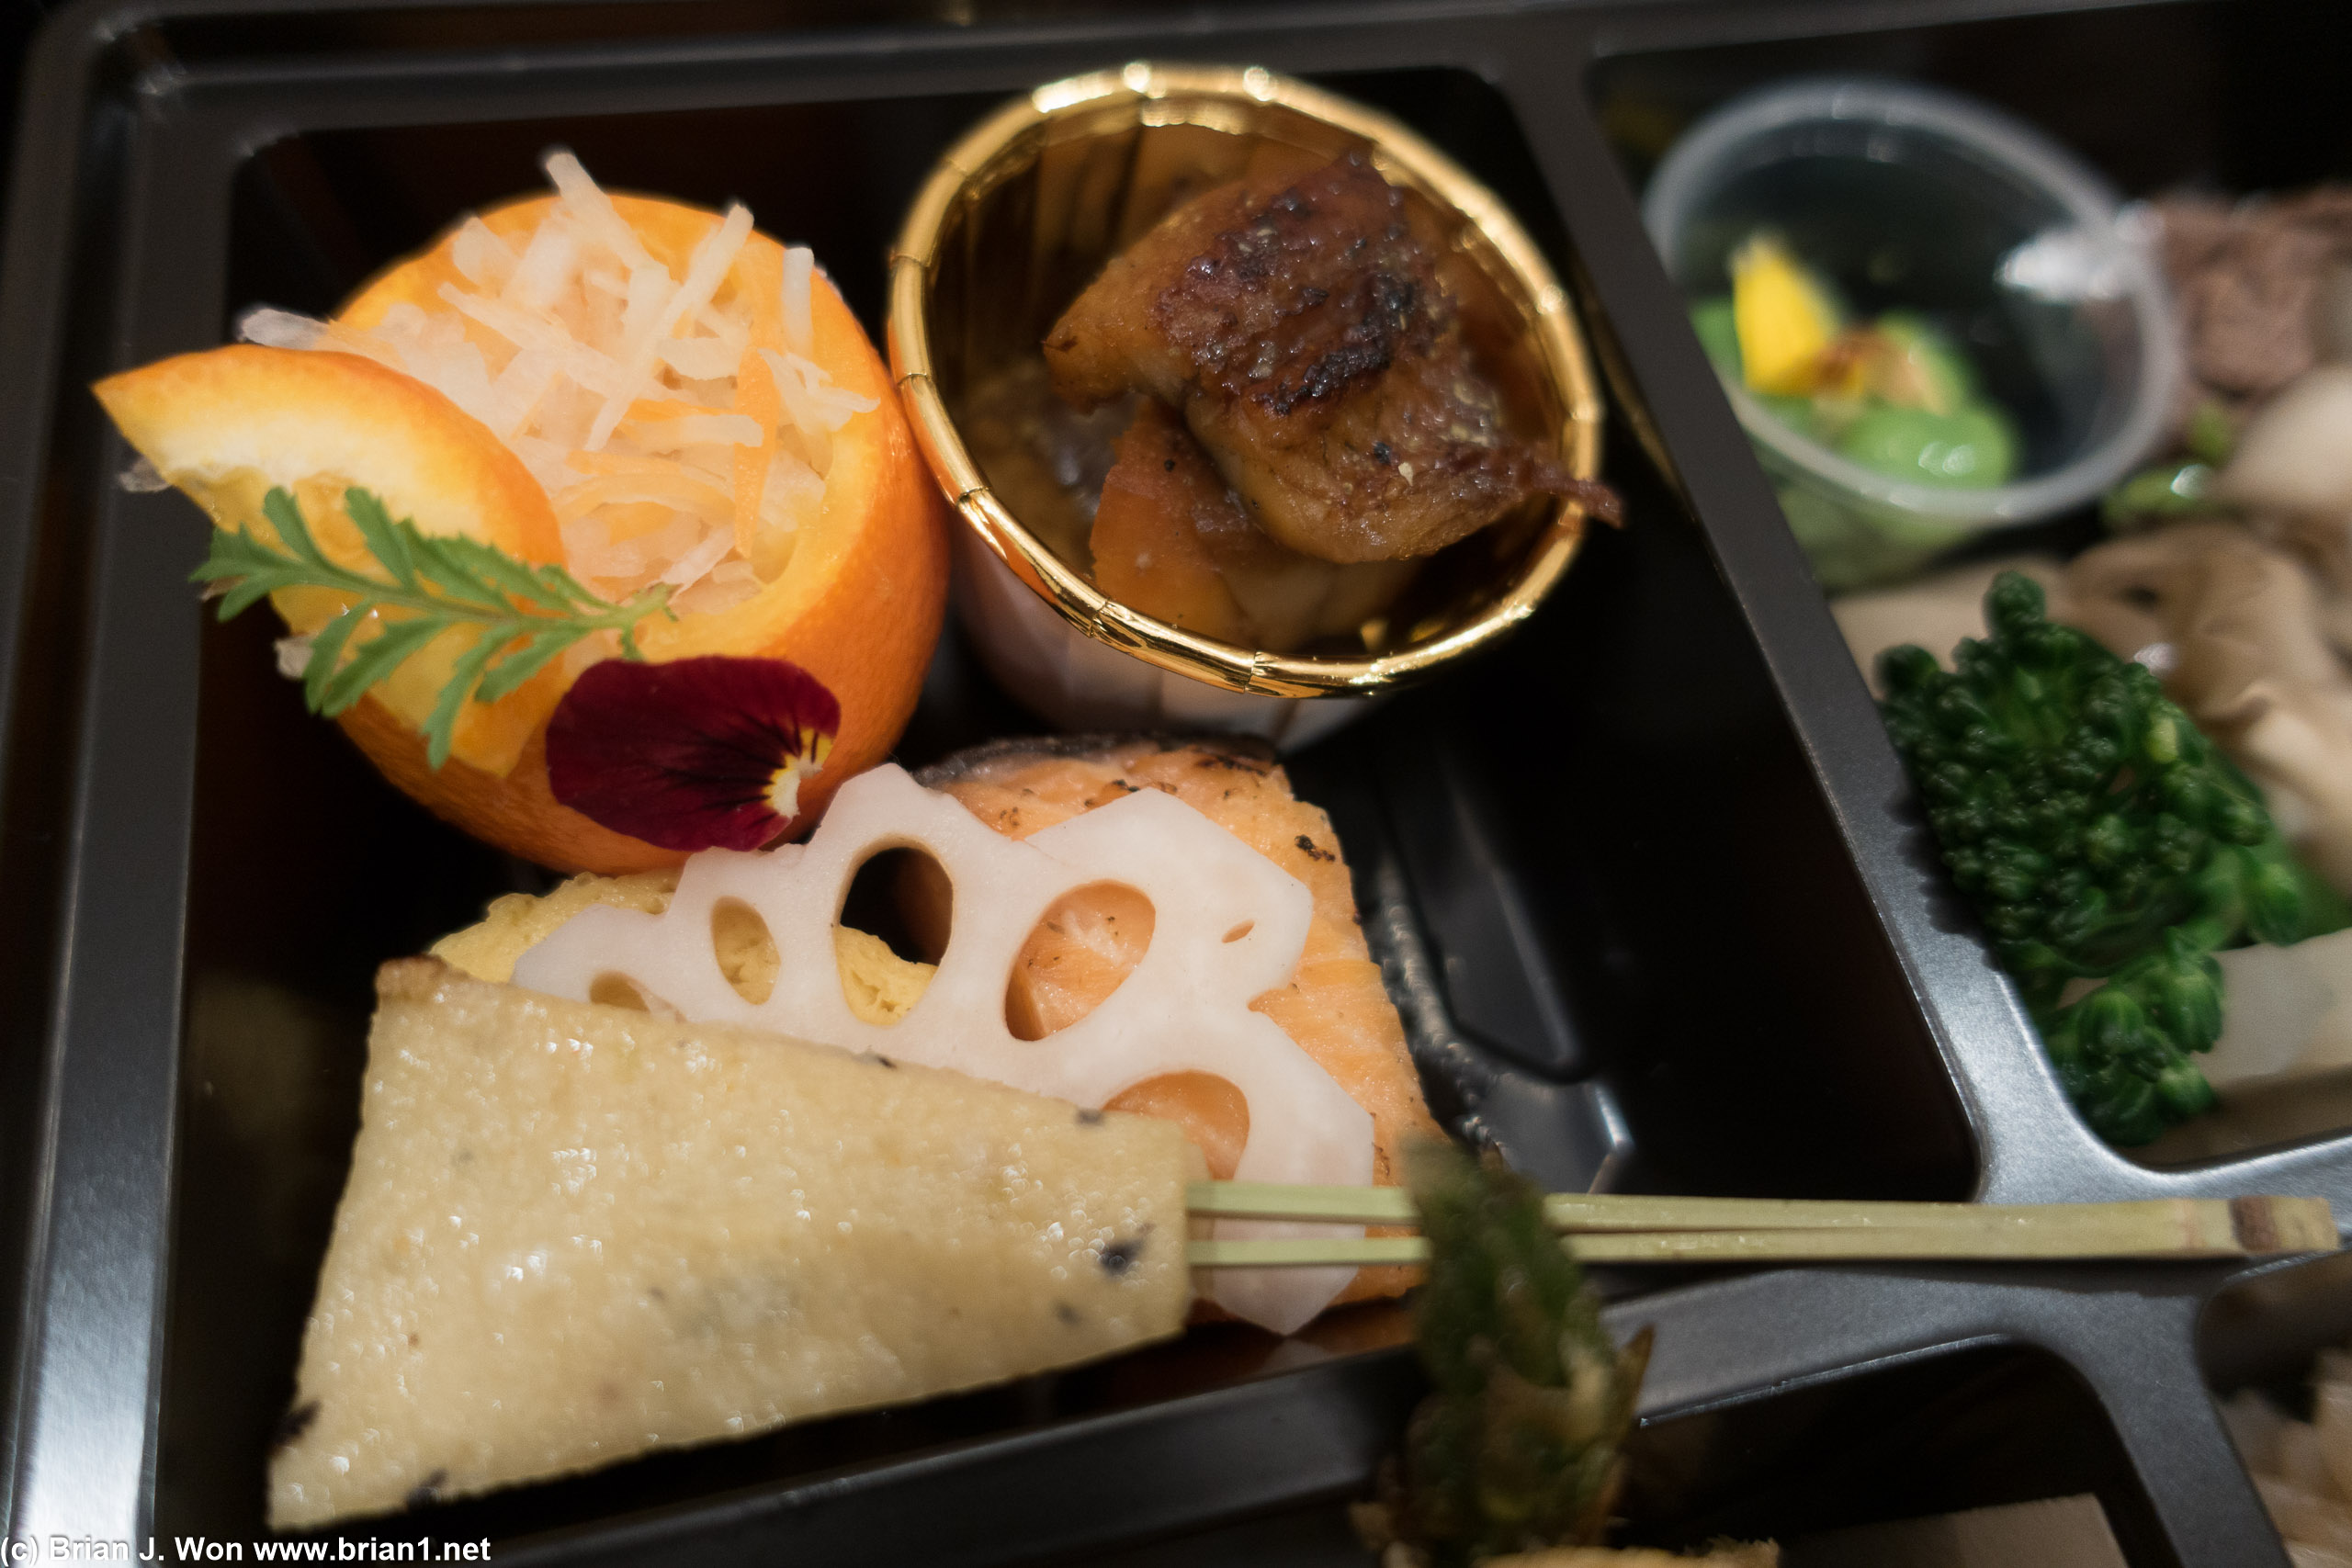 Daikon mandarinquat salad, dashi tamagoyaki, lobster shrimp matsukaze, unagi, miso salmon.